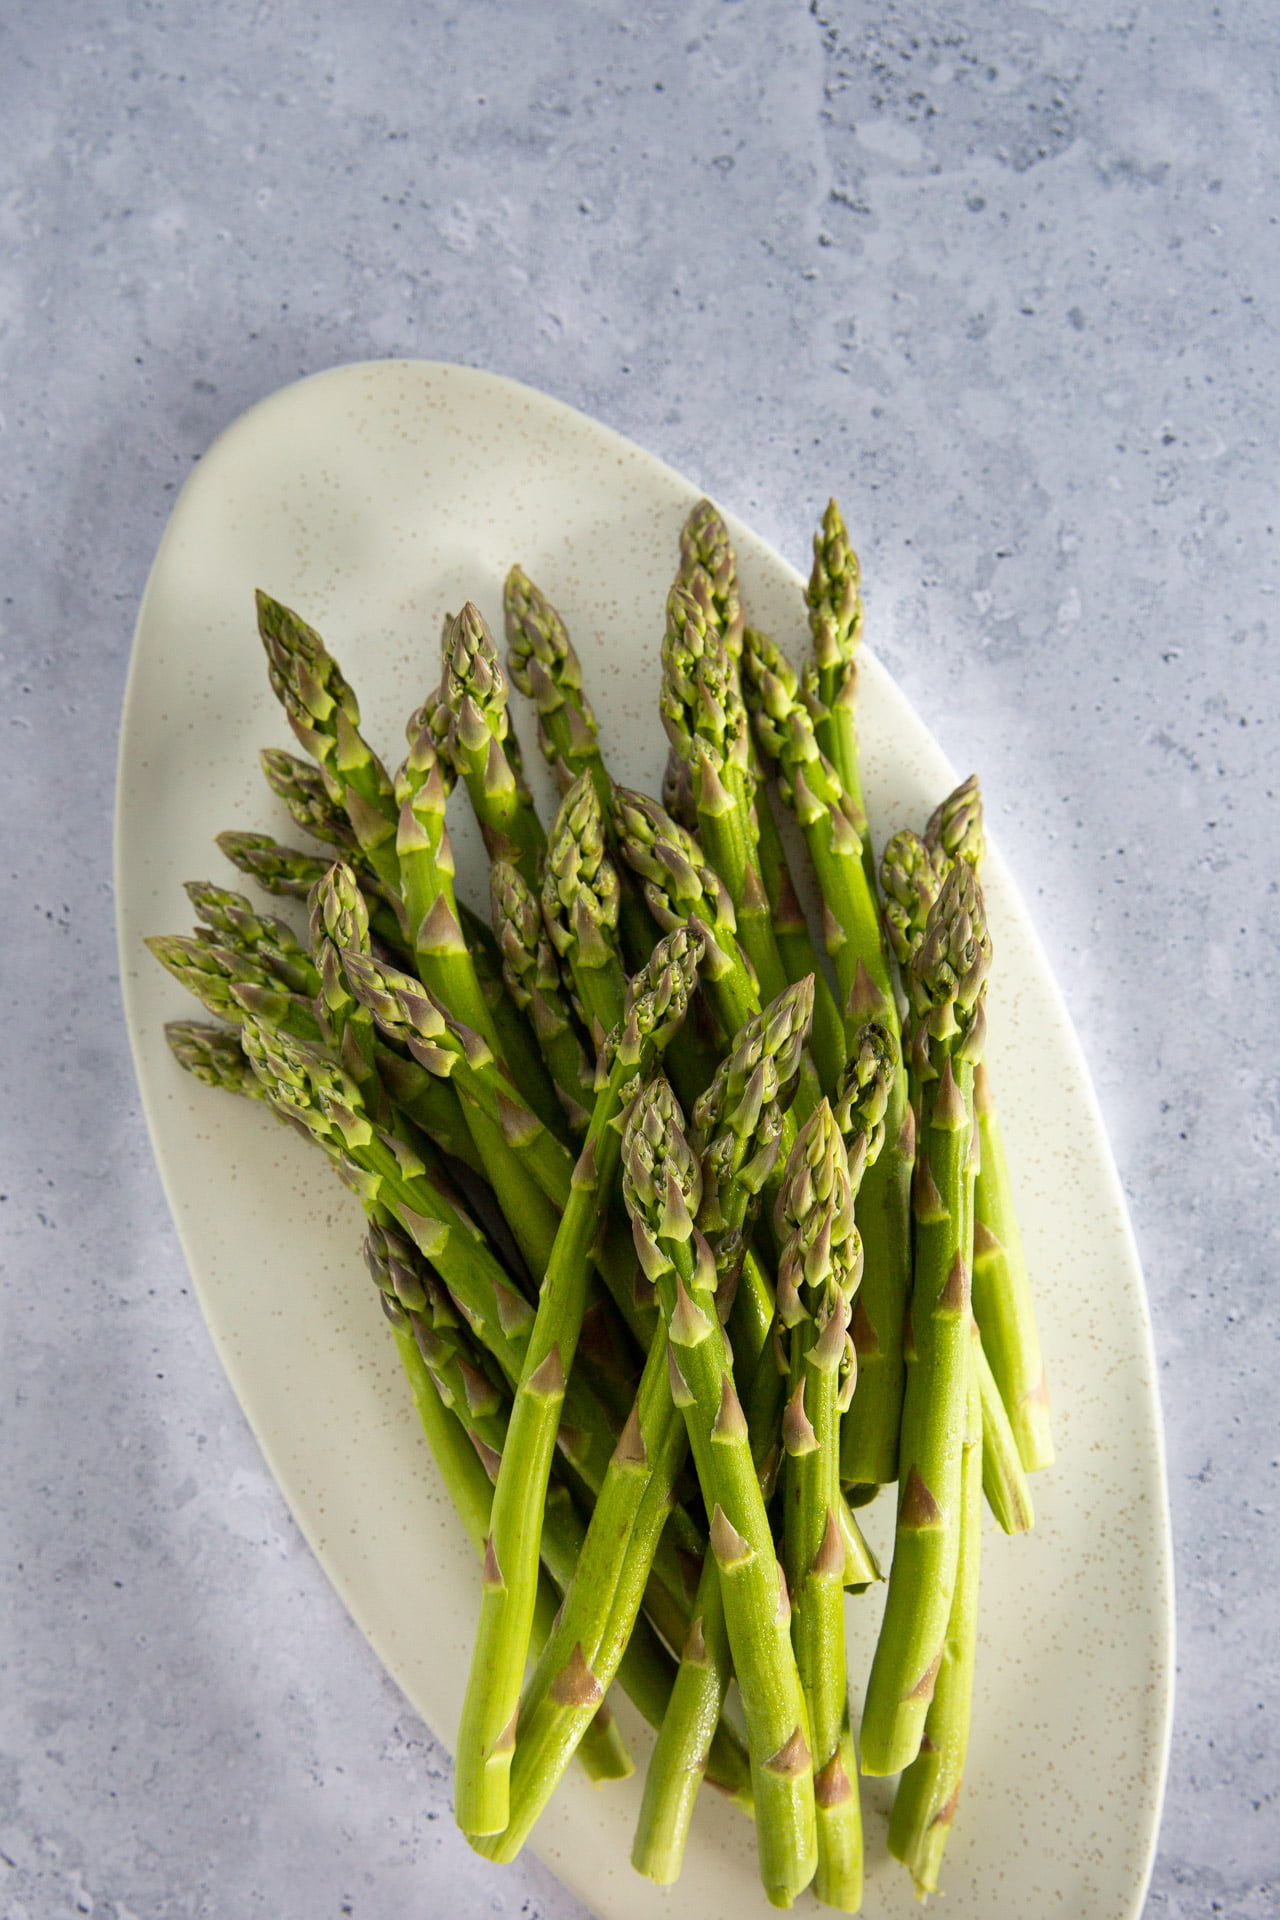 esparragos salteados suteed asparagus 1